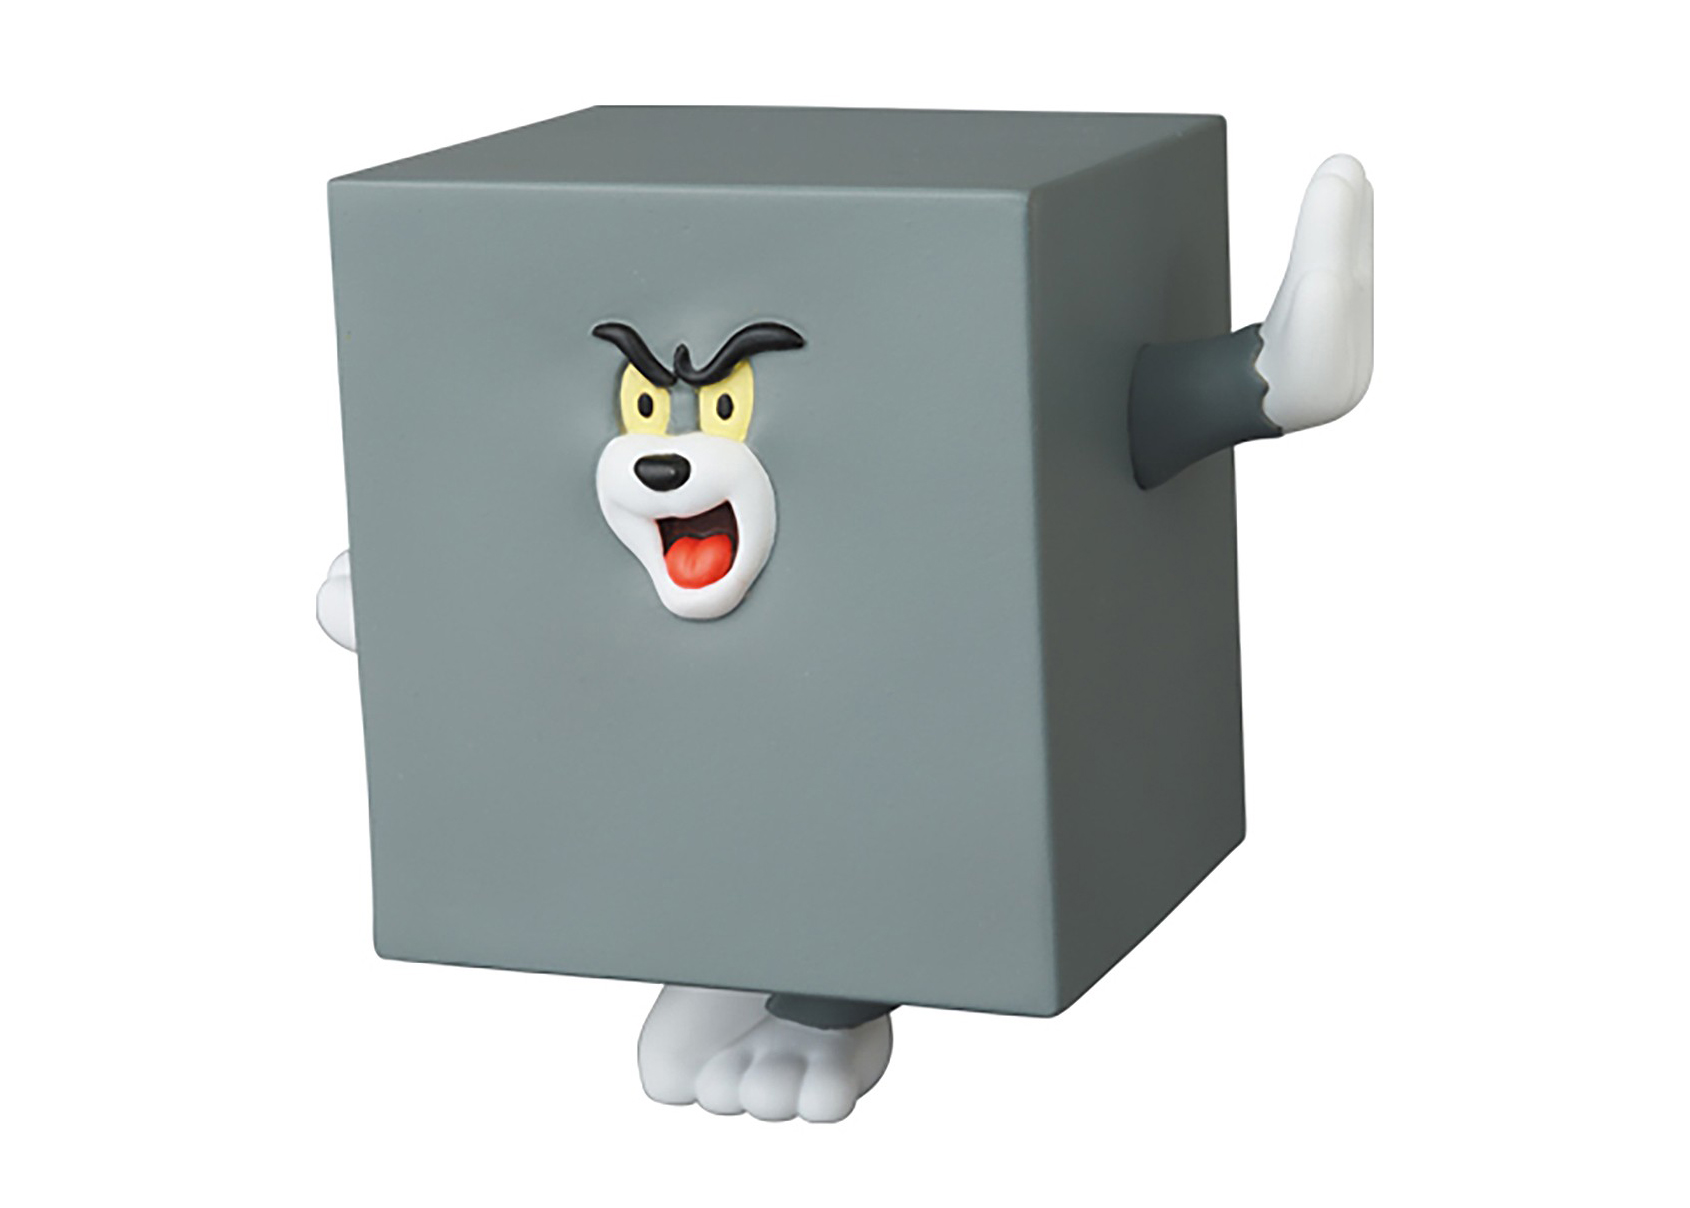 Medicom UDF Tom and Jerry- Series 2 Square Tom Figure Gray